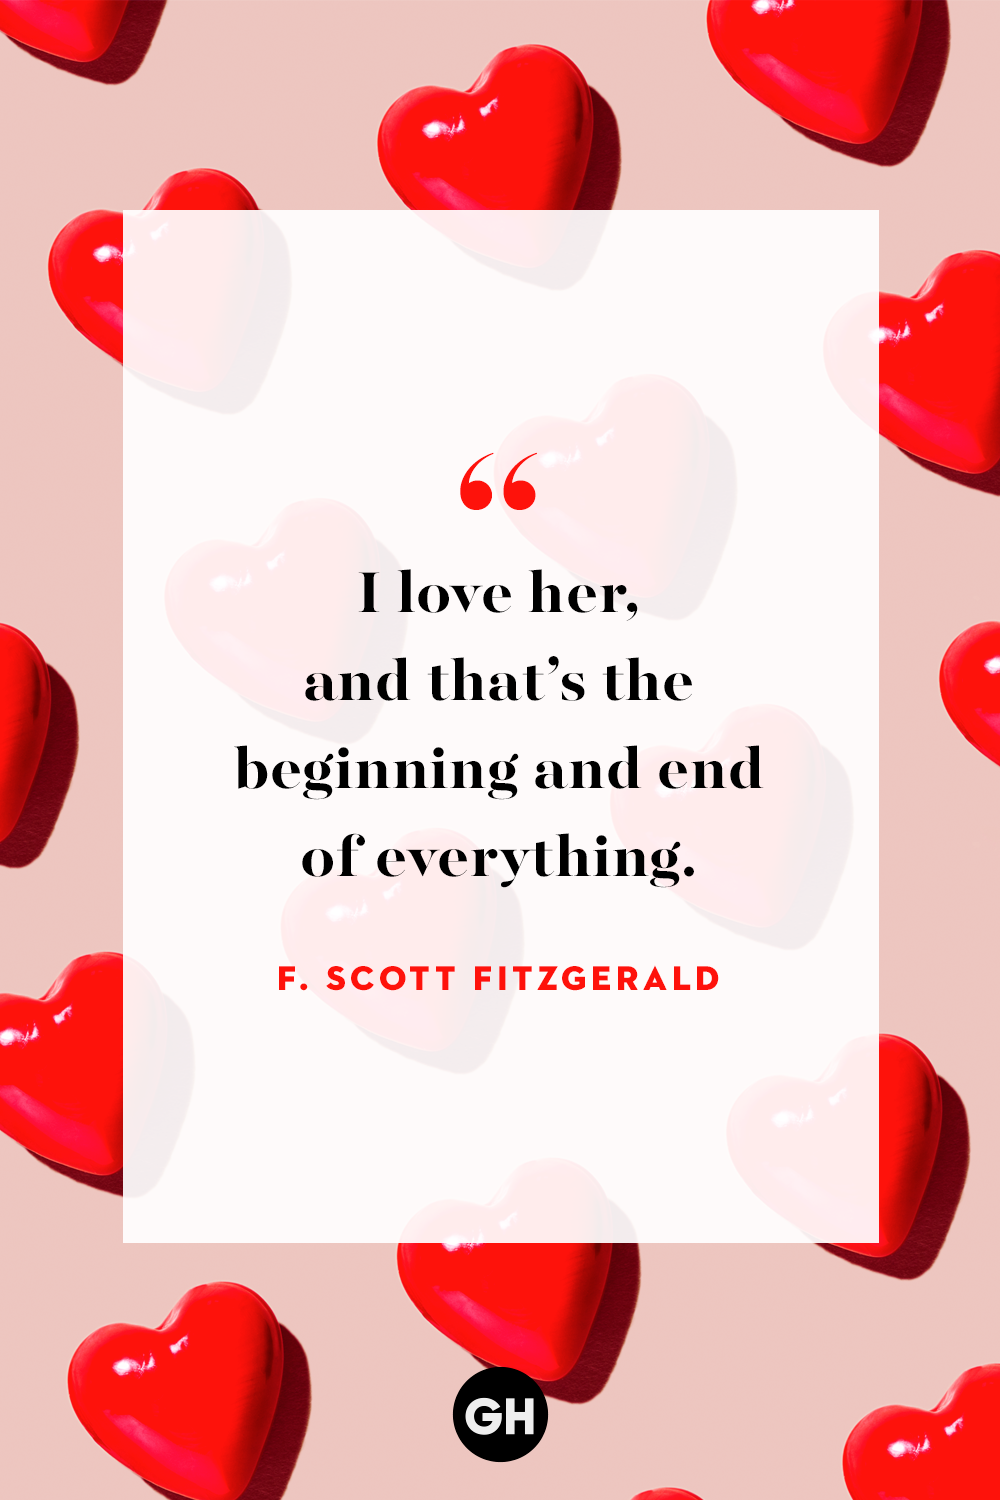 Sweet valentine quotes